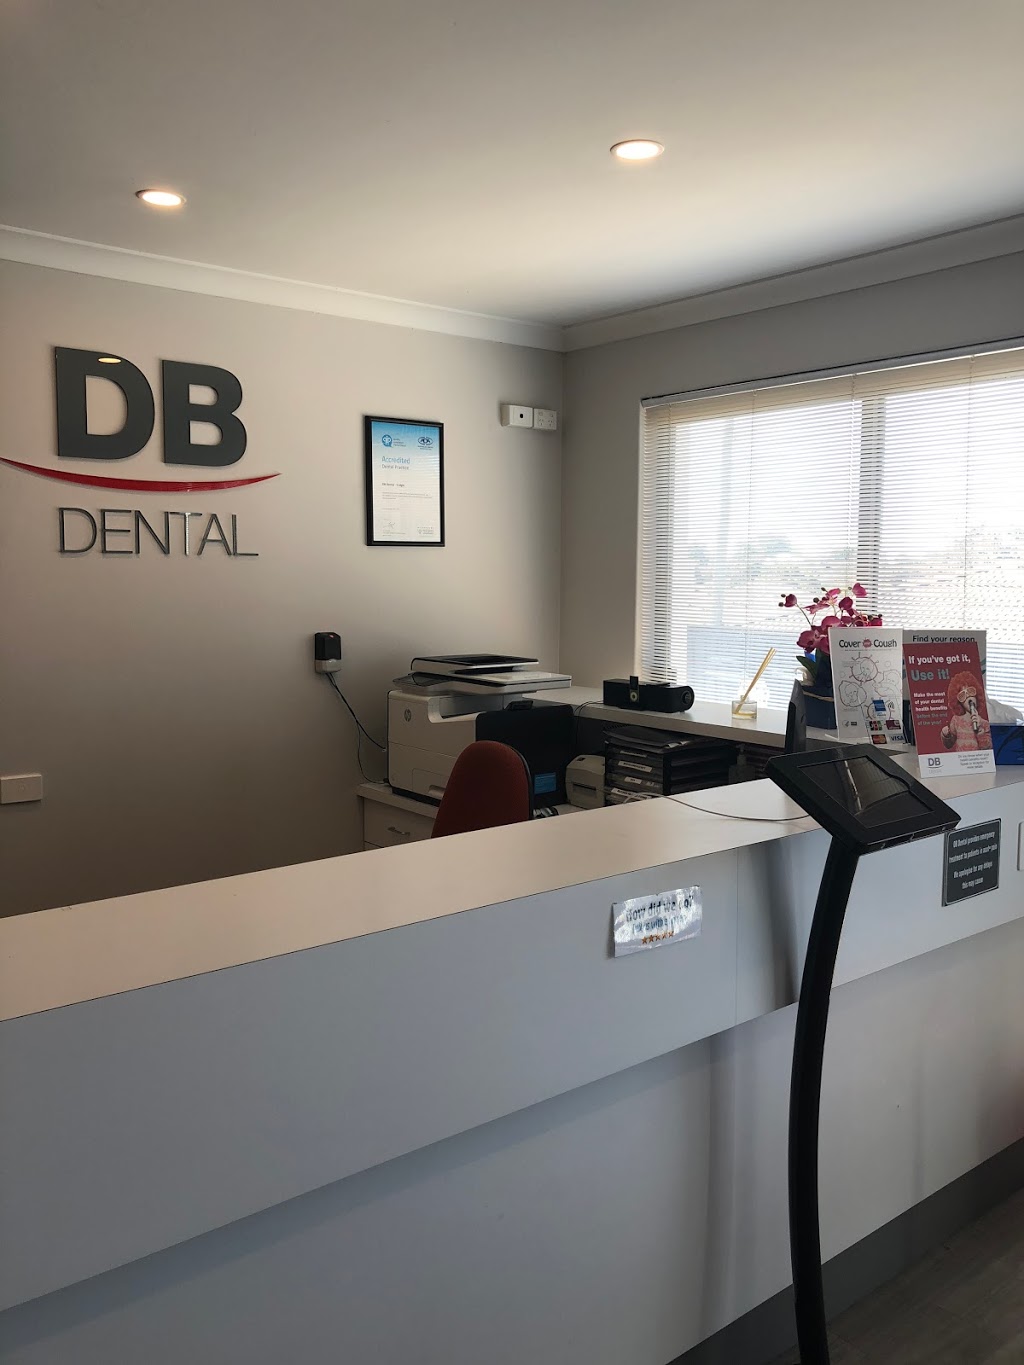 DB Dental, Innaloo